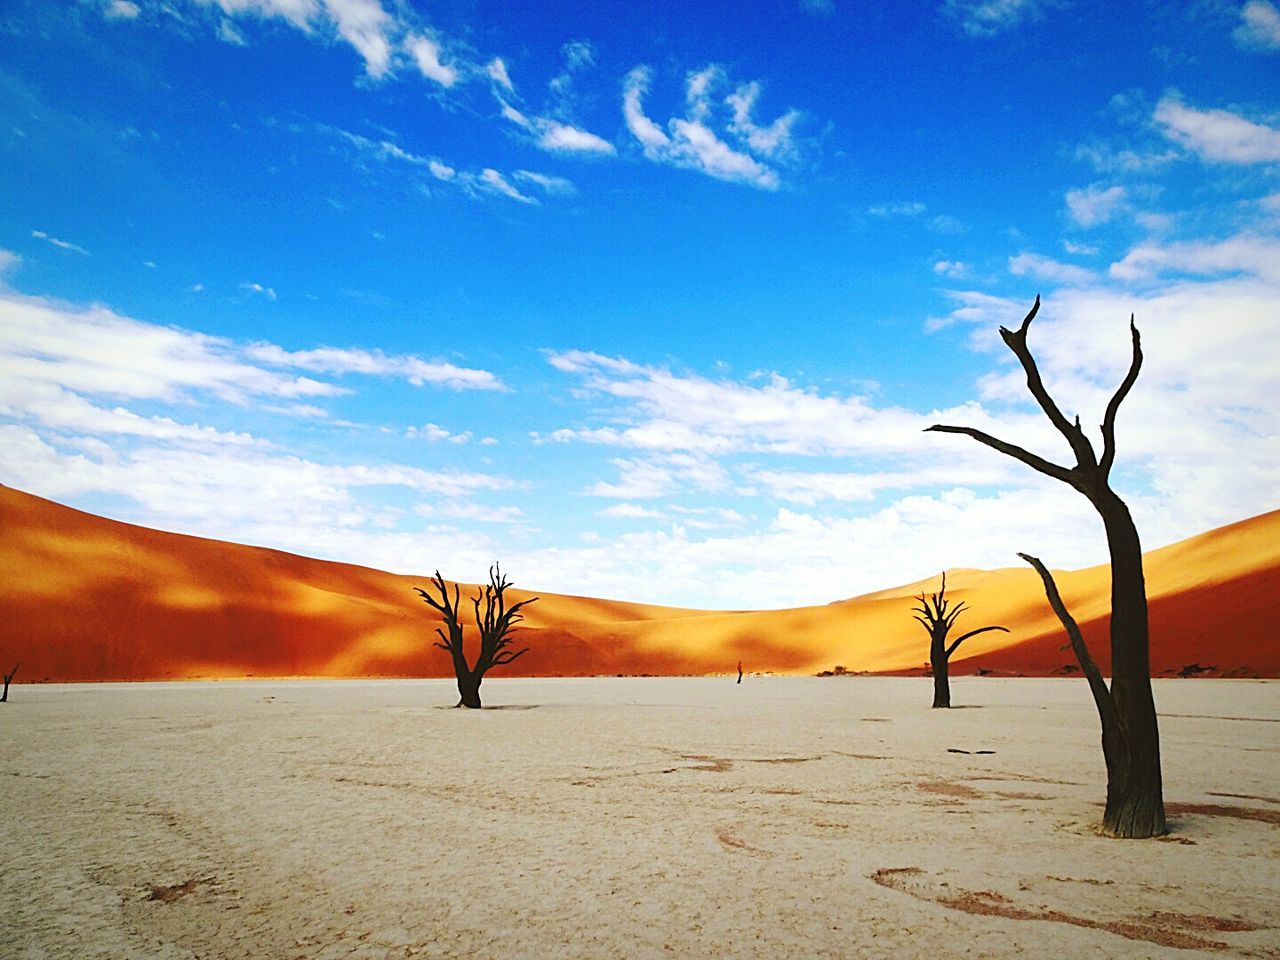 BARE TREE ON SAND DUNE IN DESERT AGAINST SKY